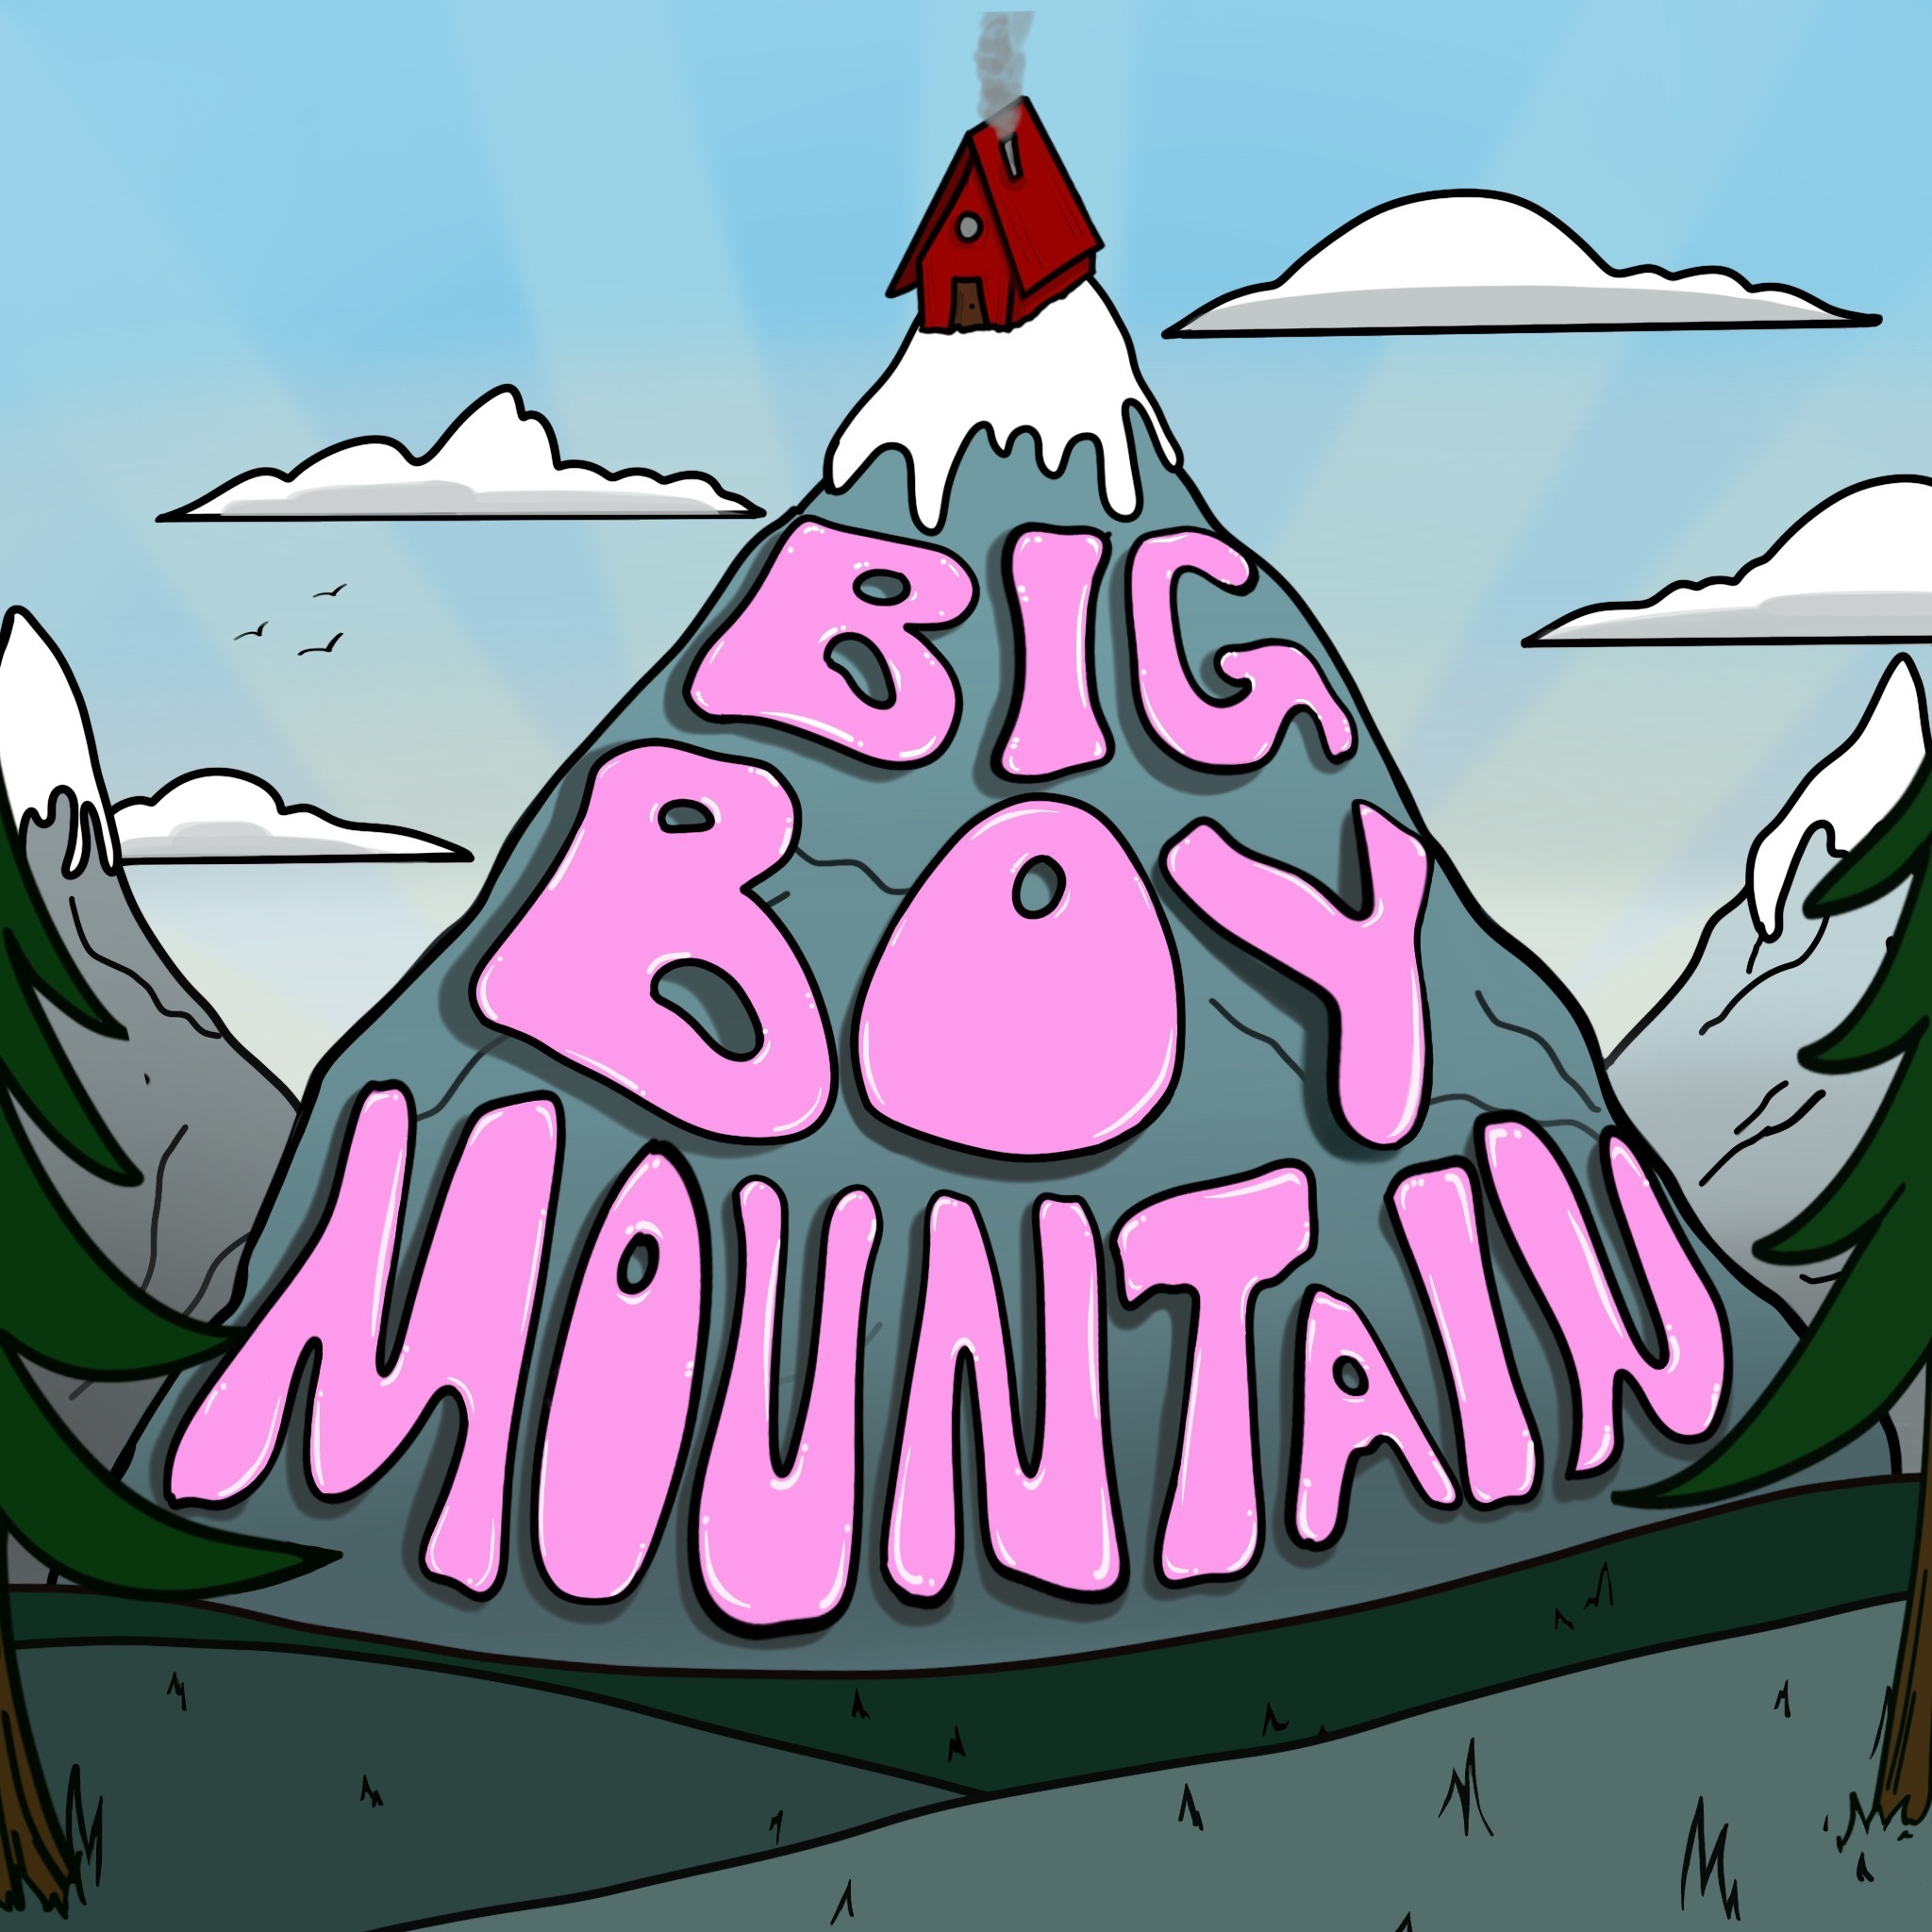 White Tyson -- Ep 37 Big Boy Mountain Podcast